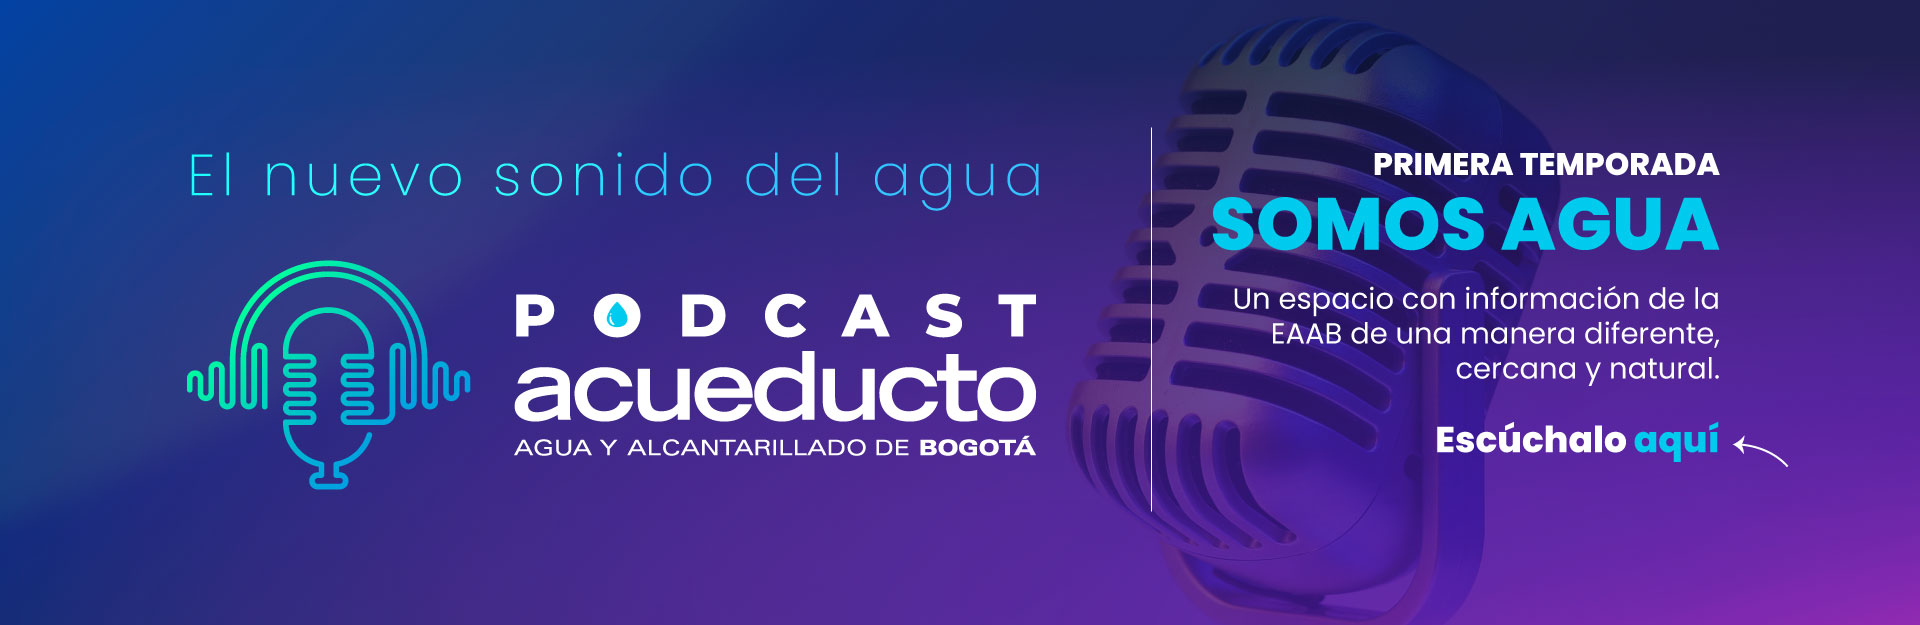 El nuevo sonido del agua: Podcast Acueducto